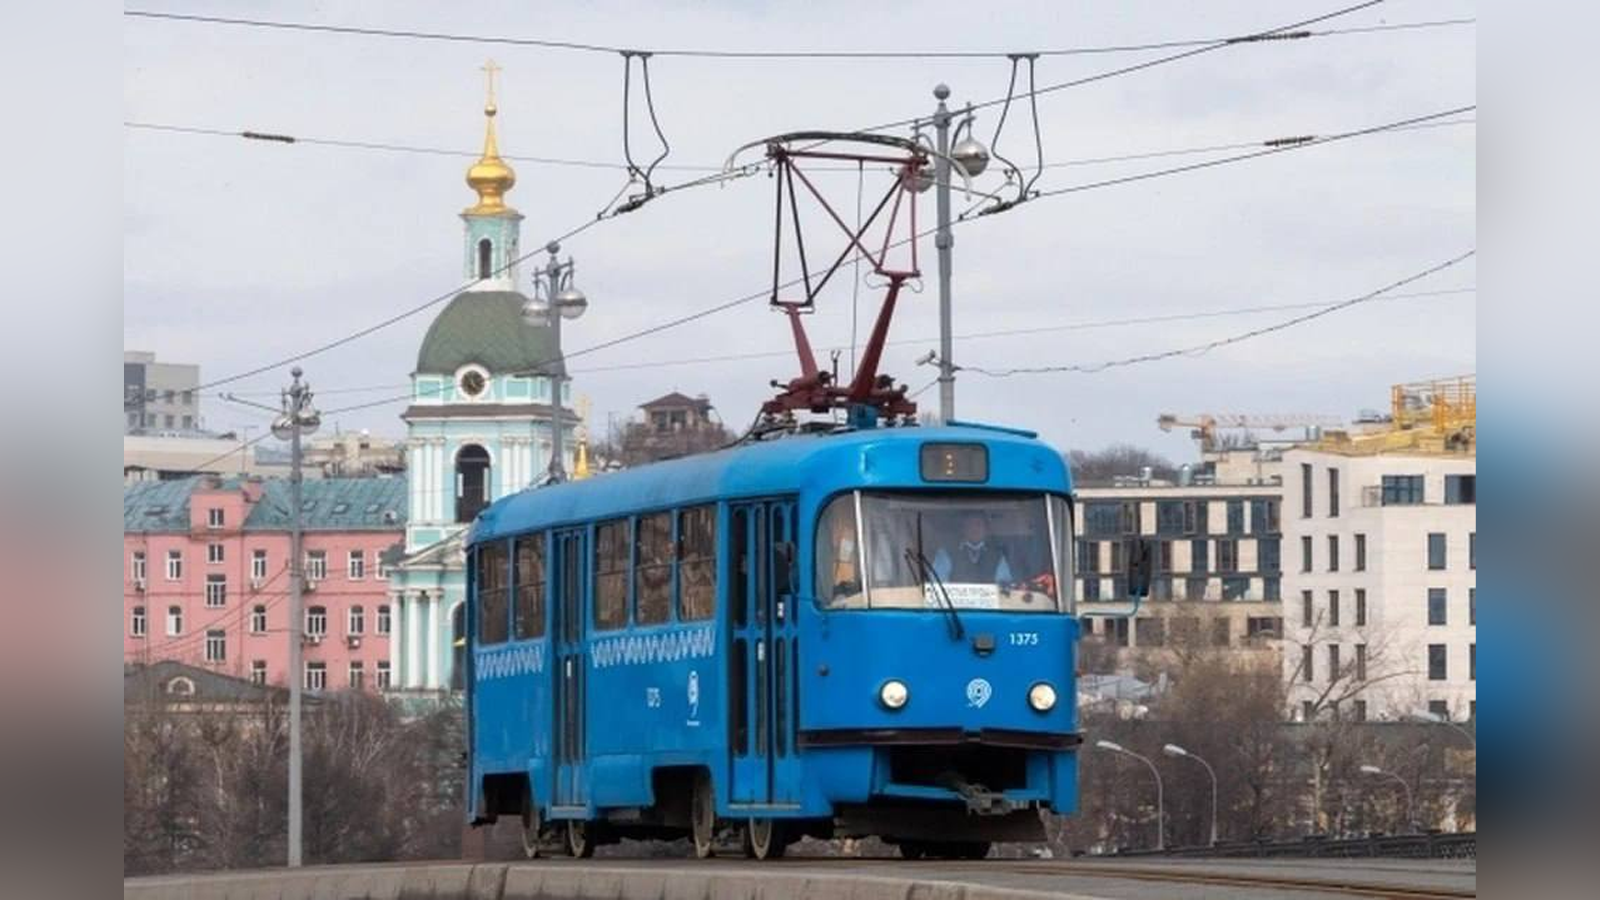 Ufa régi villamosokat ajándékozott Moszkvából